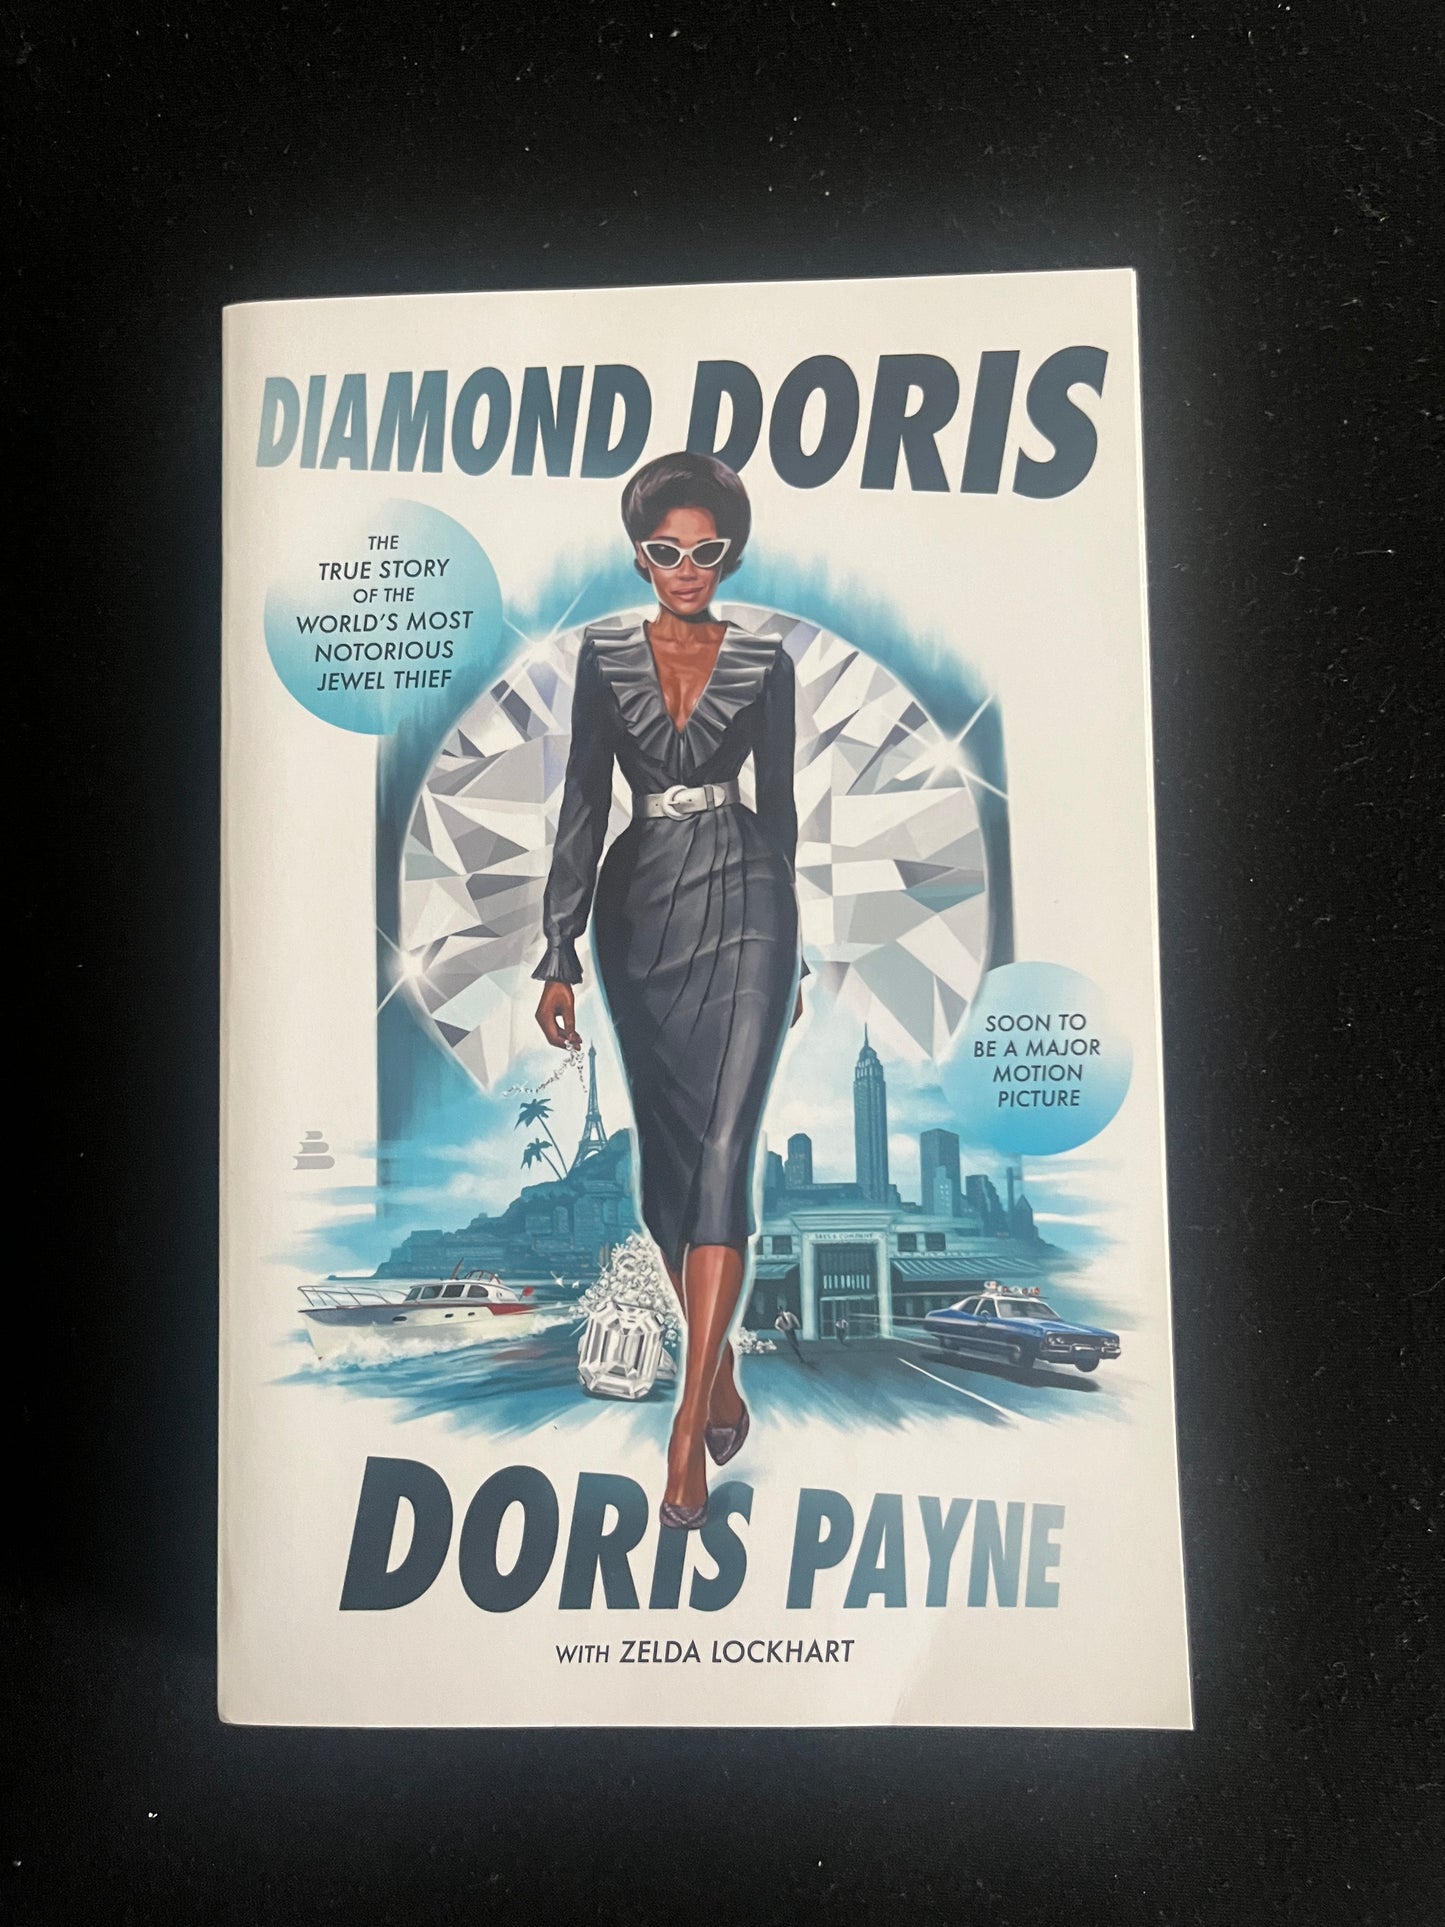 DIAMOND DORIS: The True Story of the World's Most Notorious Jewel Thief by Doris Payne